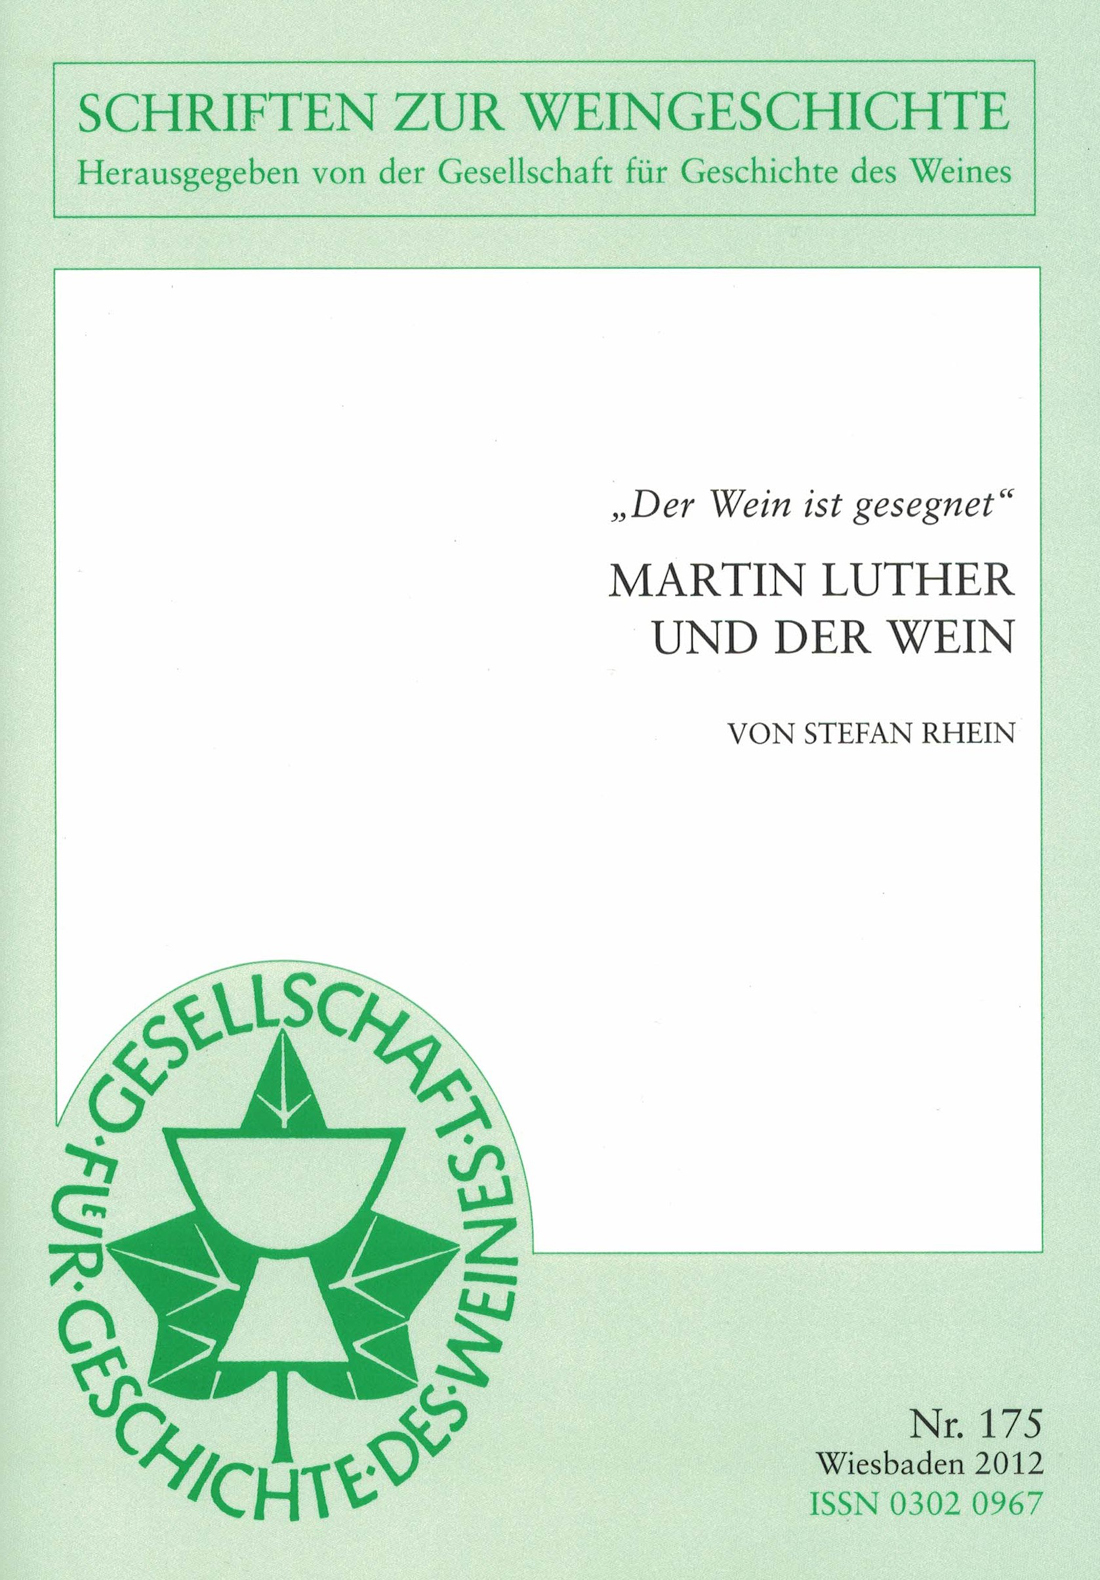 Martin Luther und der Wein